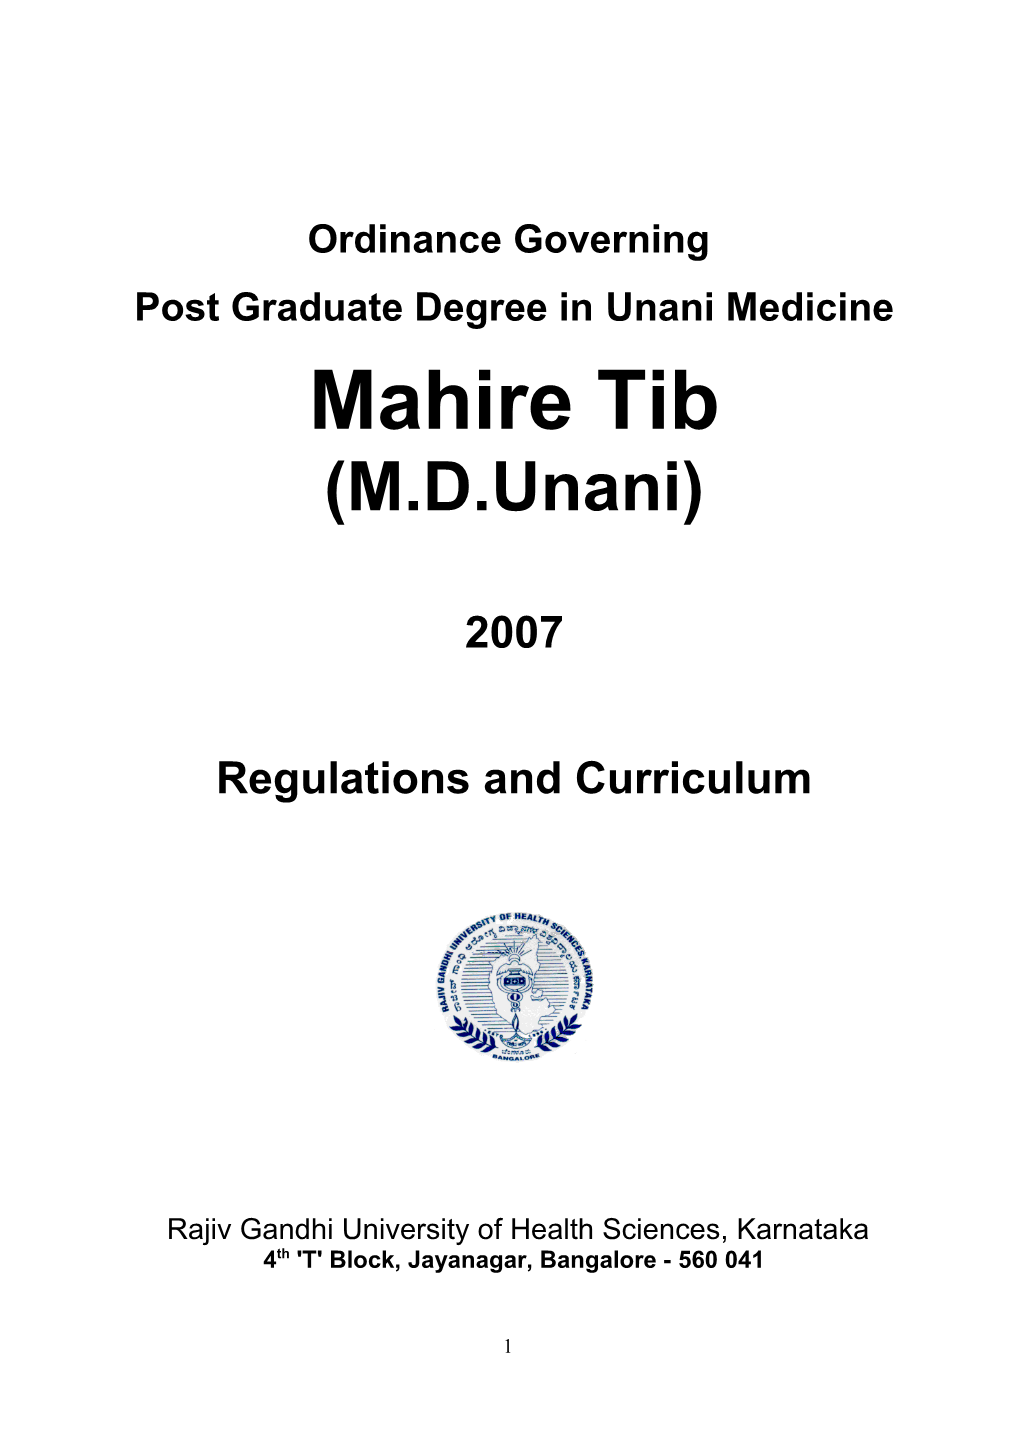 Post Graduate Degree in Unani Medicine